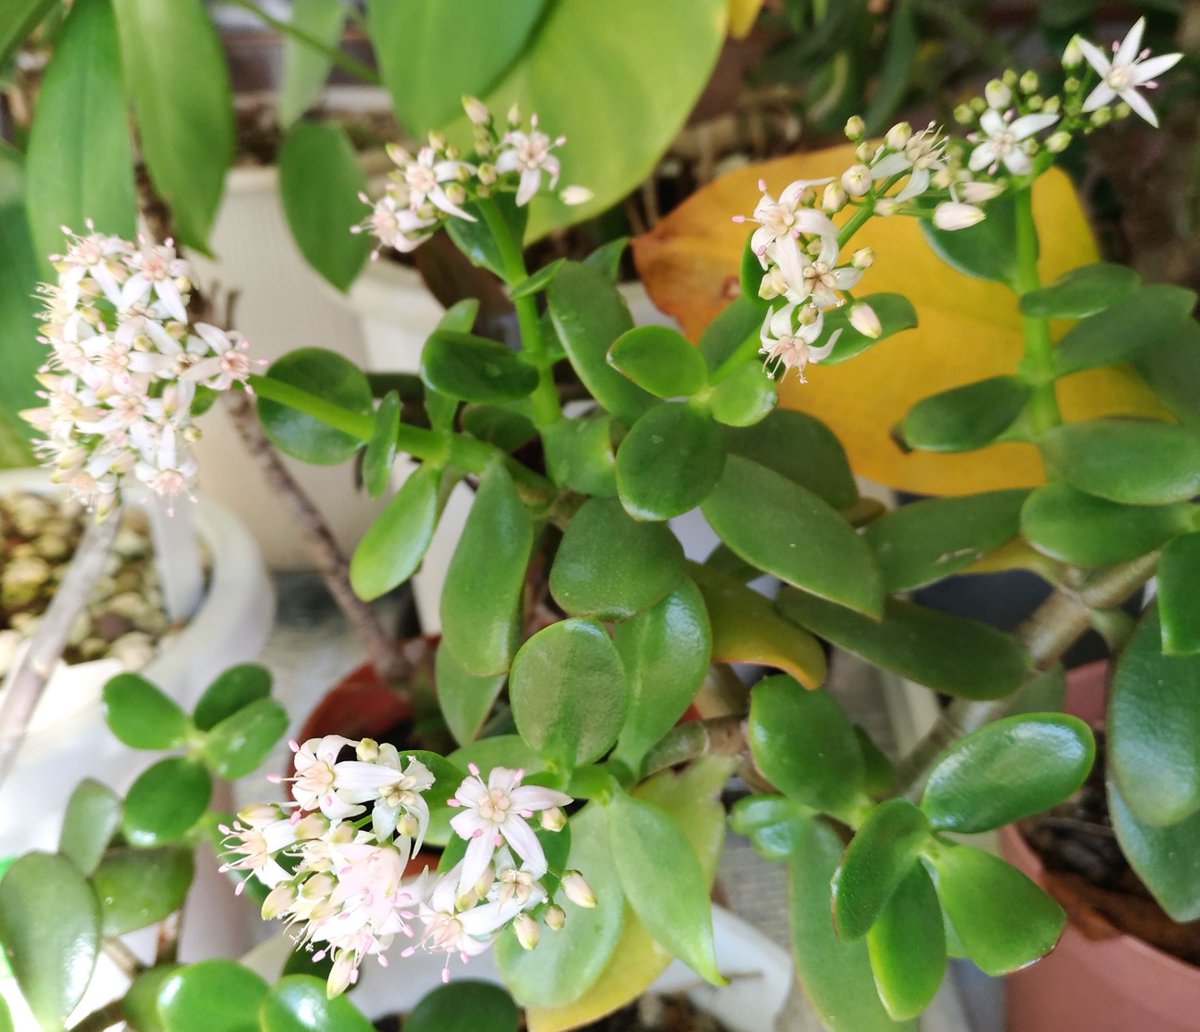 こころんグリーン V Twitter わが家のカネノナルキの花がたくさん咲いています 小さな白い花が一面に開いています これだけ花が咲いてくれると とても嬉しいですね カネノナルキ 小さな花 白い花 冬の花 冬 園芸品種 多肉植物 園芸 ガーデニング